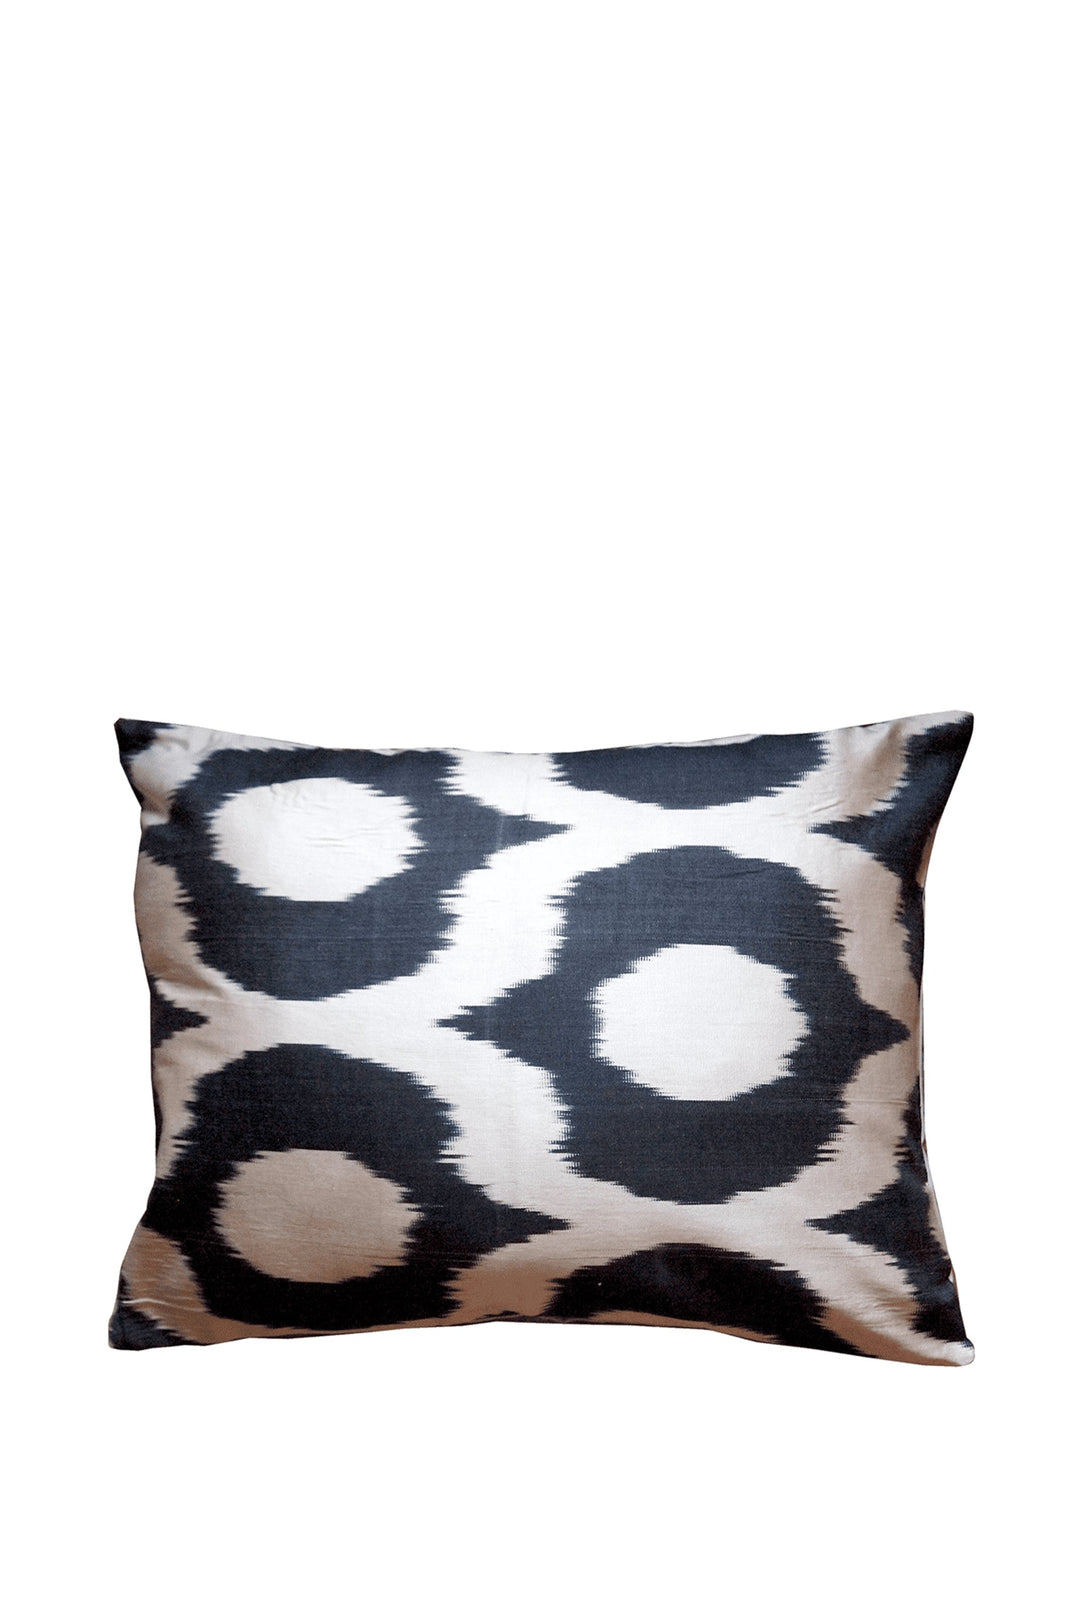 Les Ottomans Silk Cushion - Black & White